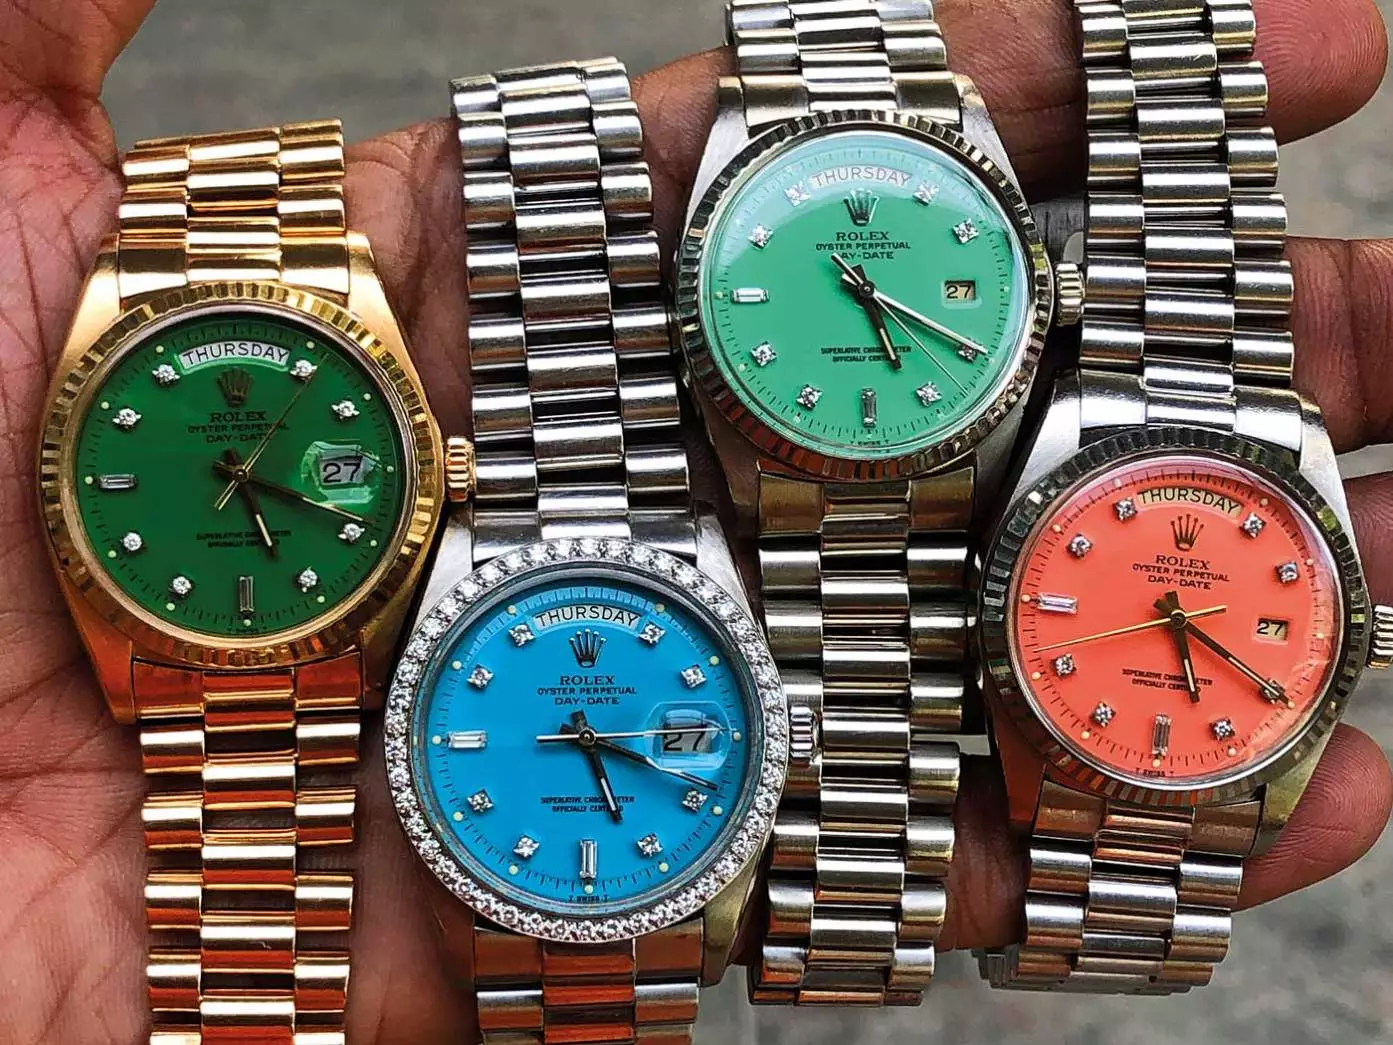 MENONTON YANG DIREKOMENDASIKAN: 3 alasan mengapa jam tangan sangat mahal - Jam Tangan Time and Tide